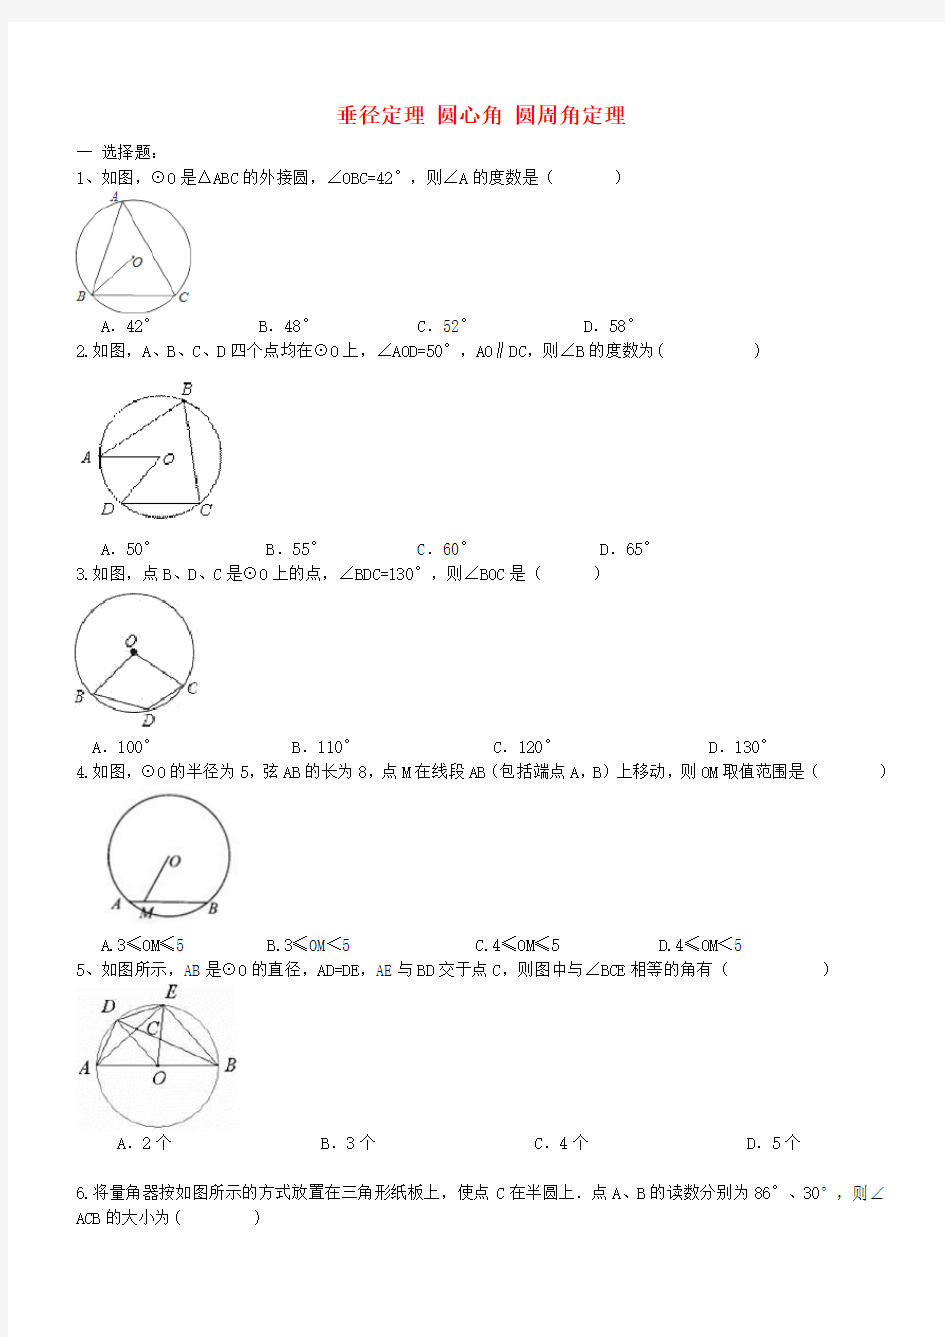 中考数学一轮专题复习垂径定理圆心角圆周角定理